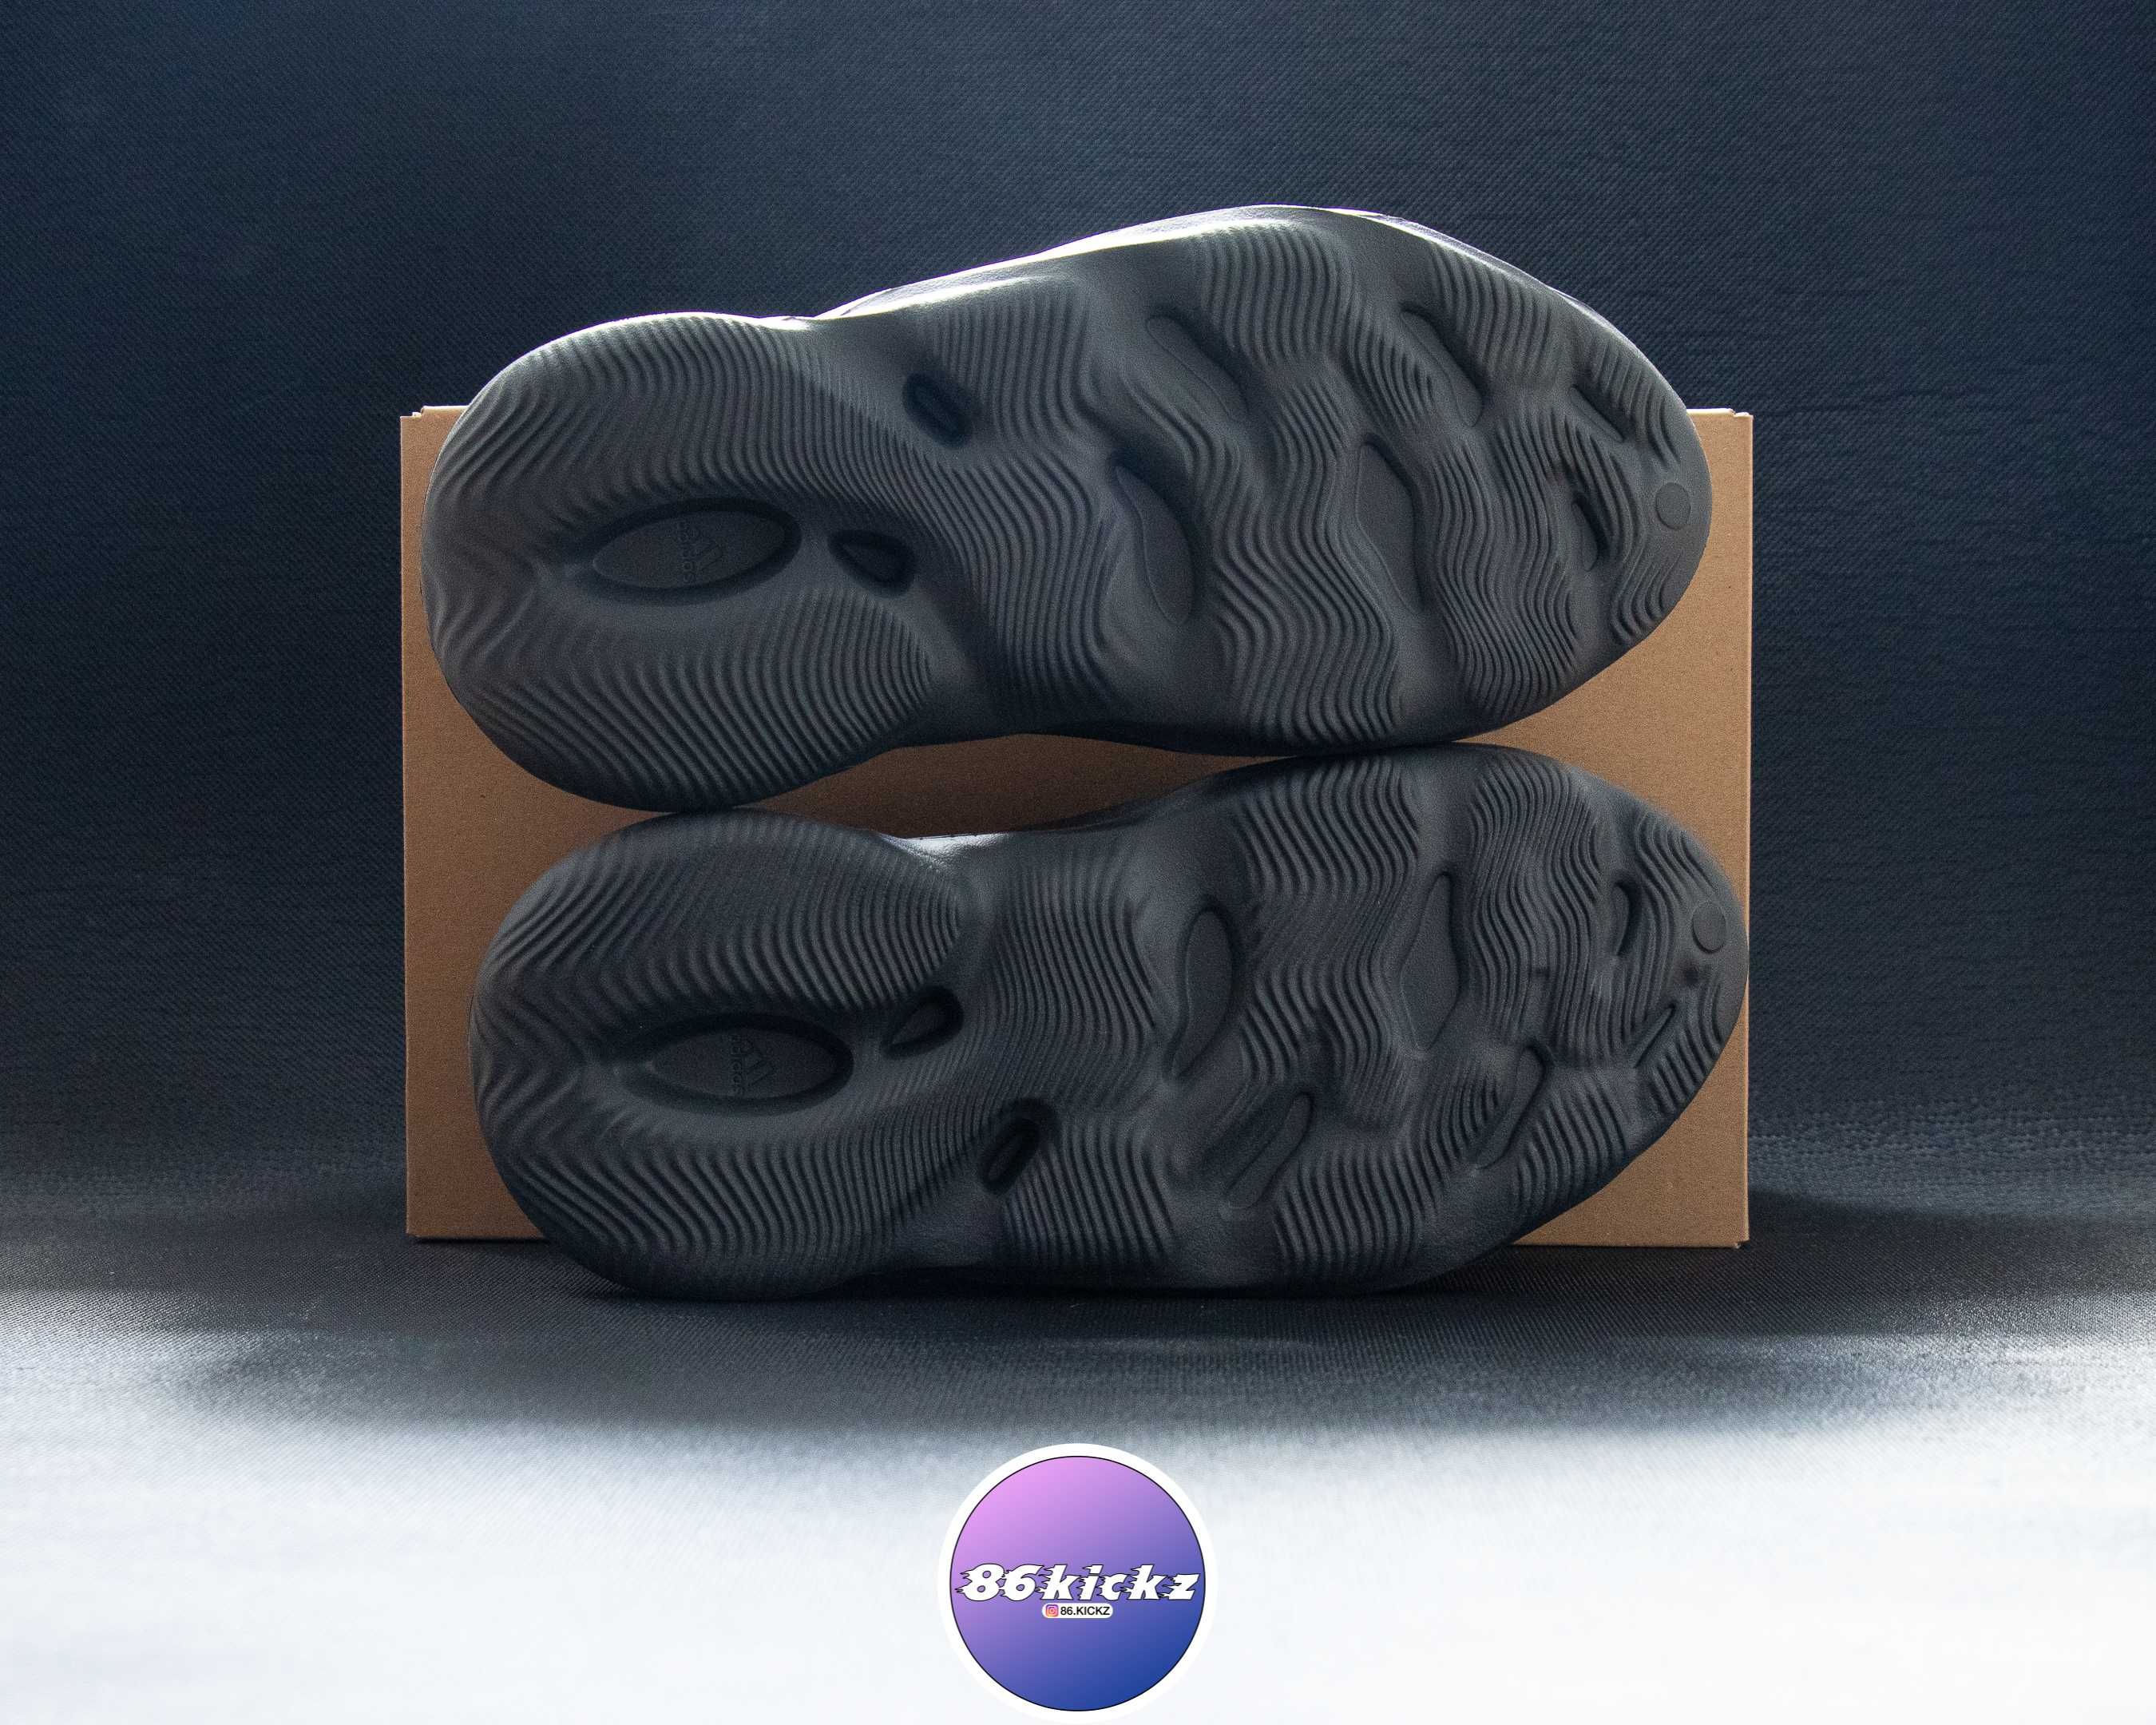 Adidas Yeezy Foam Runner Carbon, 39, noi